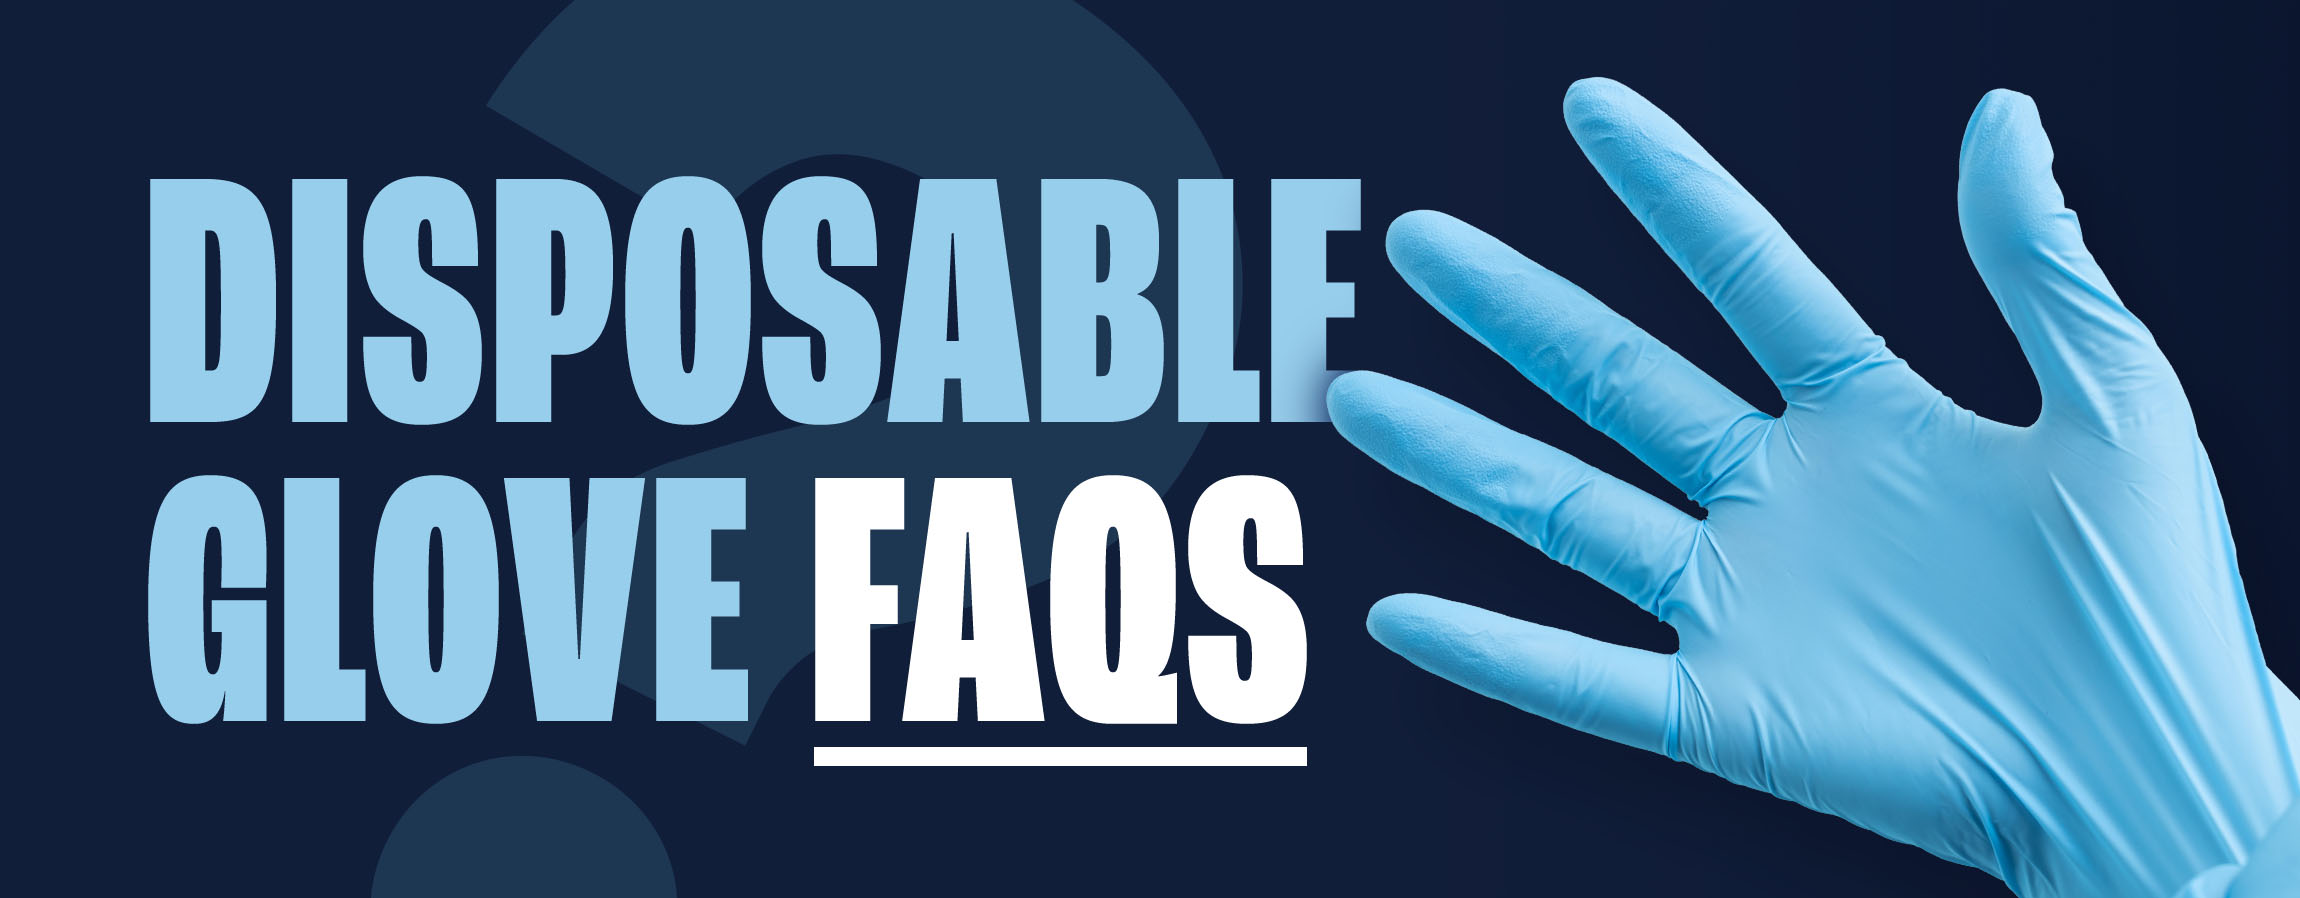 Disposable Gloves FAQ 